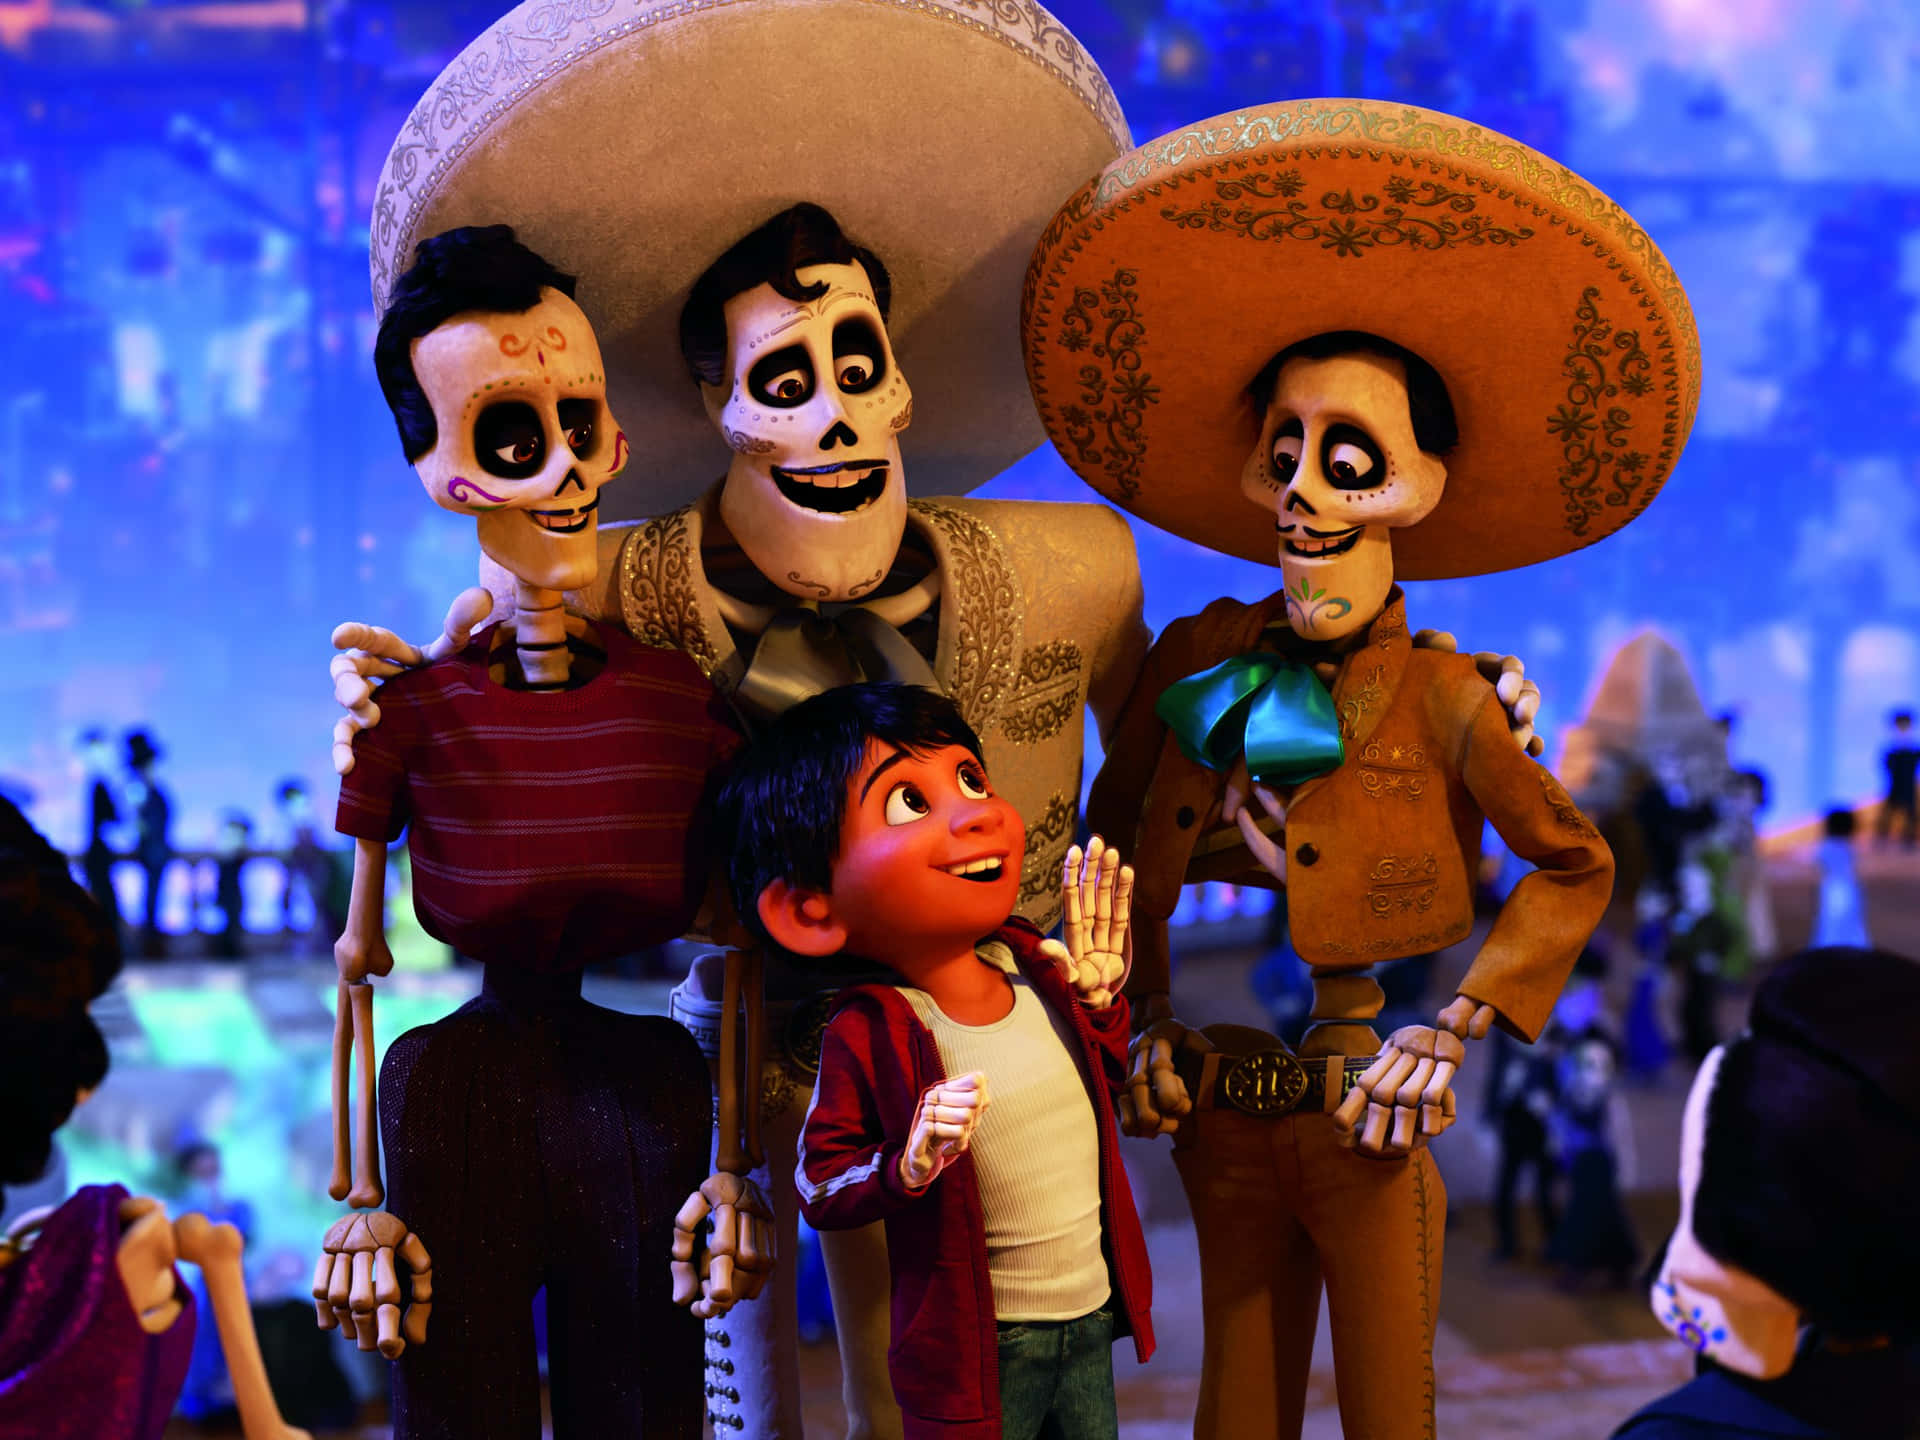 Nyd de livlige farver Land of the Dead med Miguel og hans musikalske venner i den populære film Coca Disney! Wallpaper